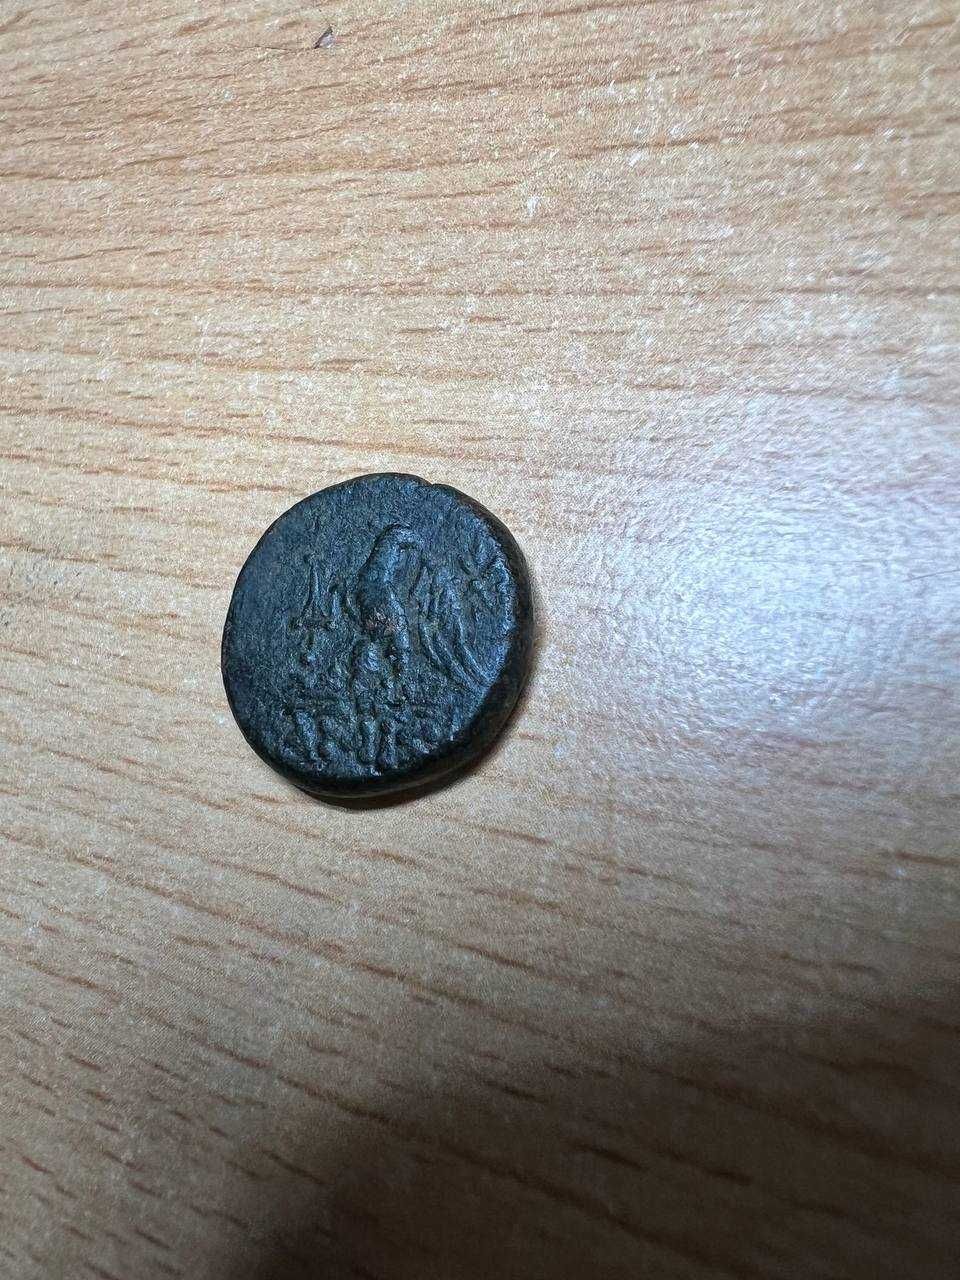 Античная монета, Амис (Понт, Митридат Евпатор)